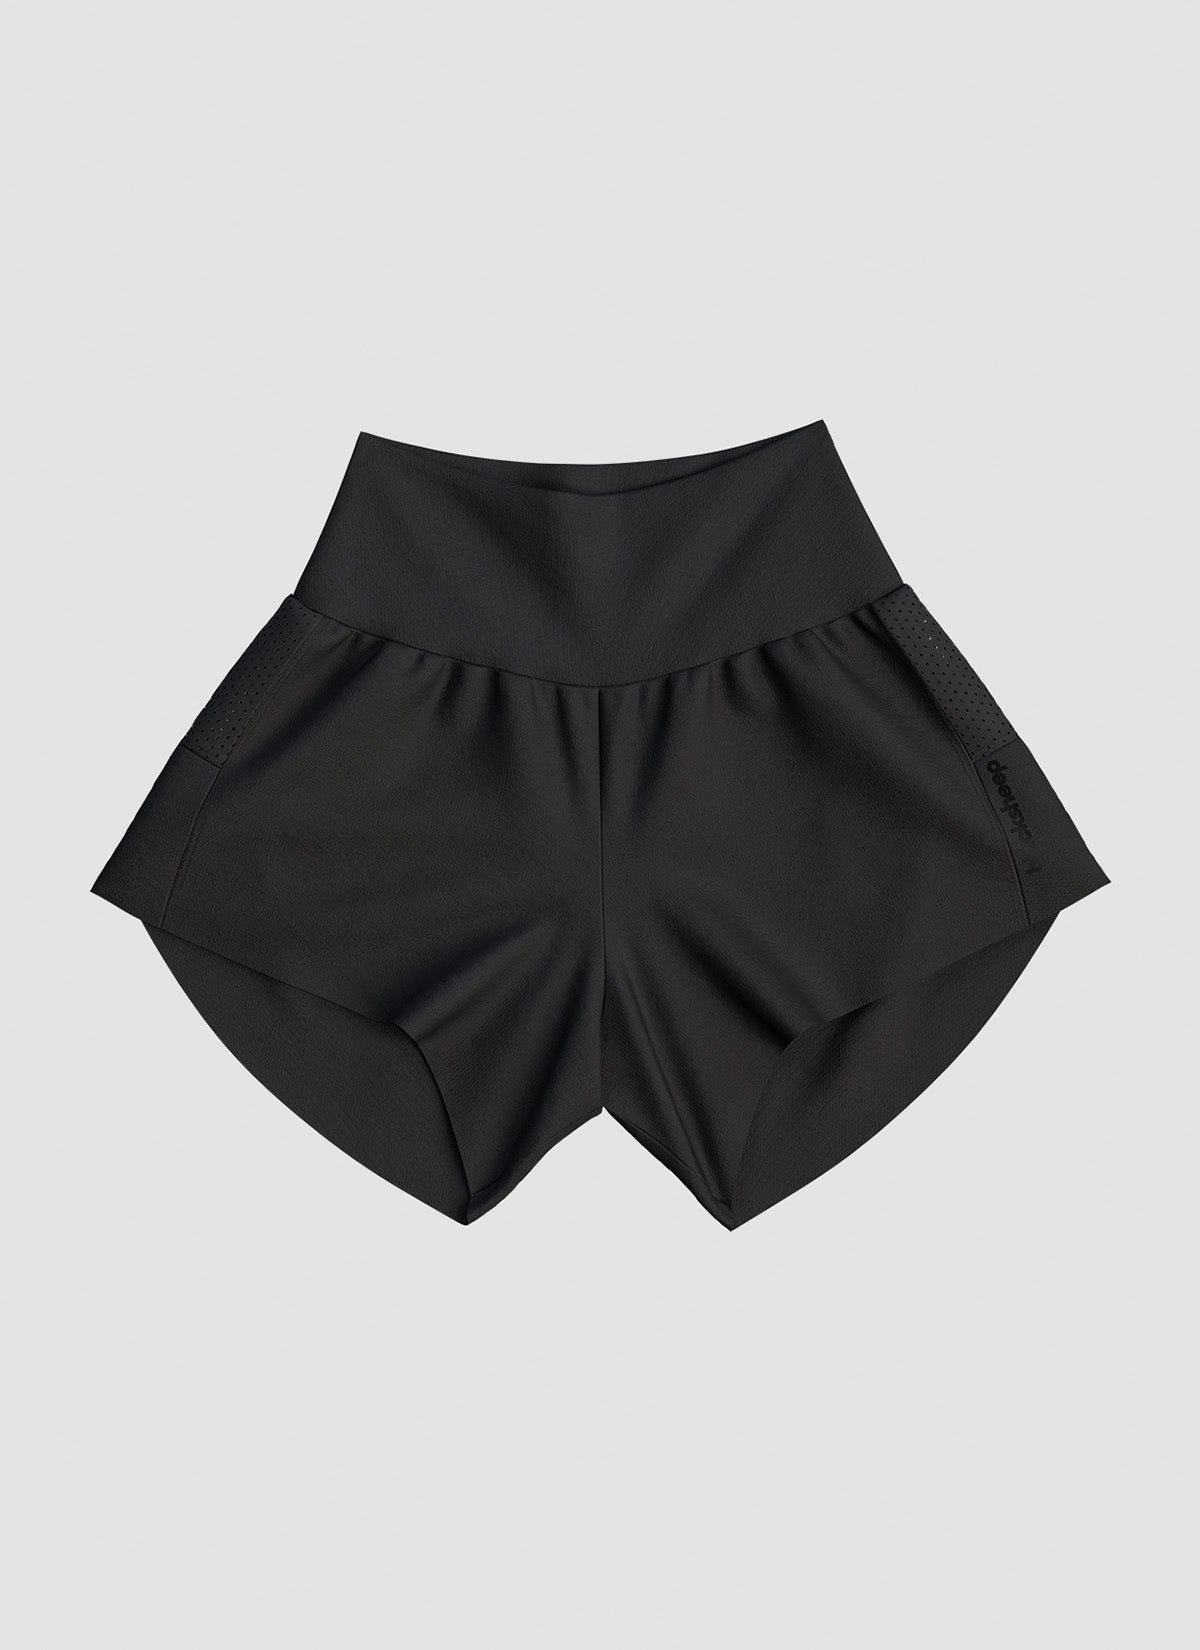 Women's Dry 4" Short - Black